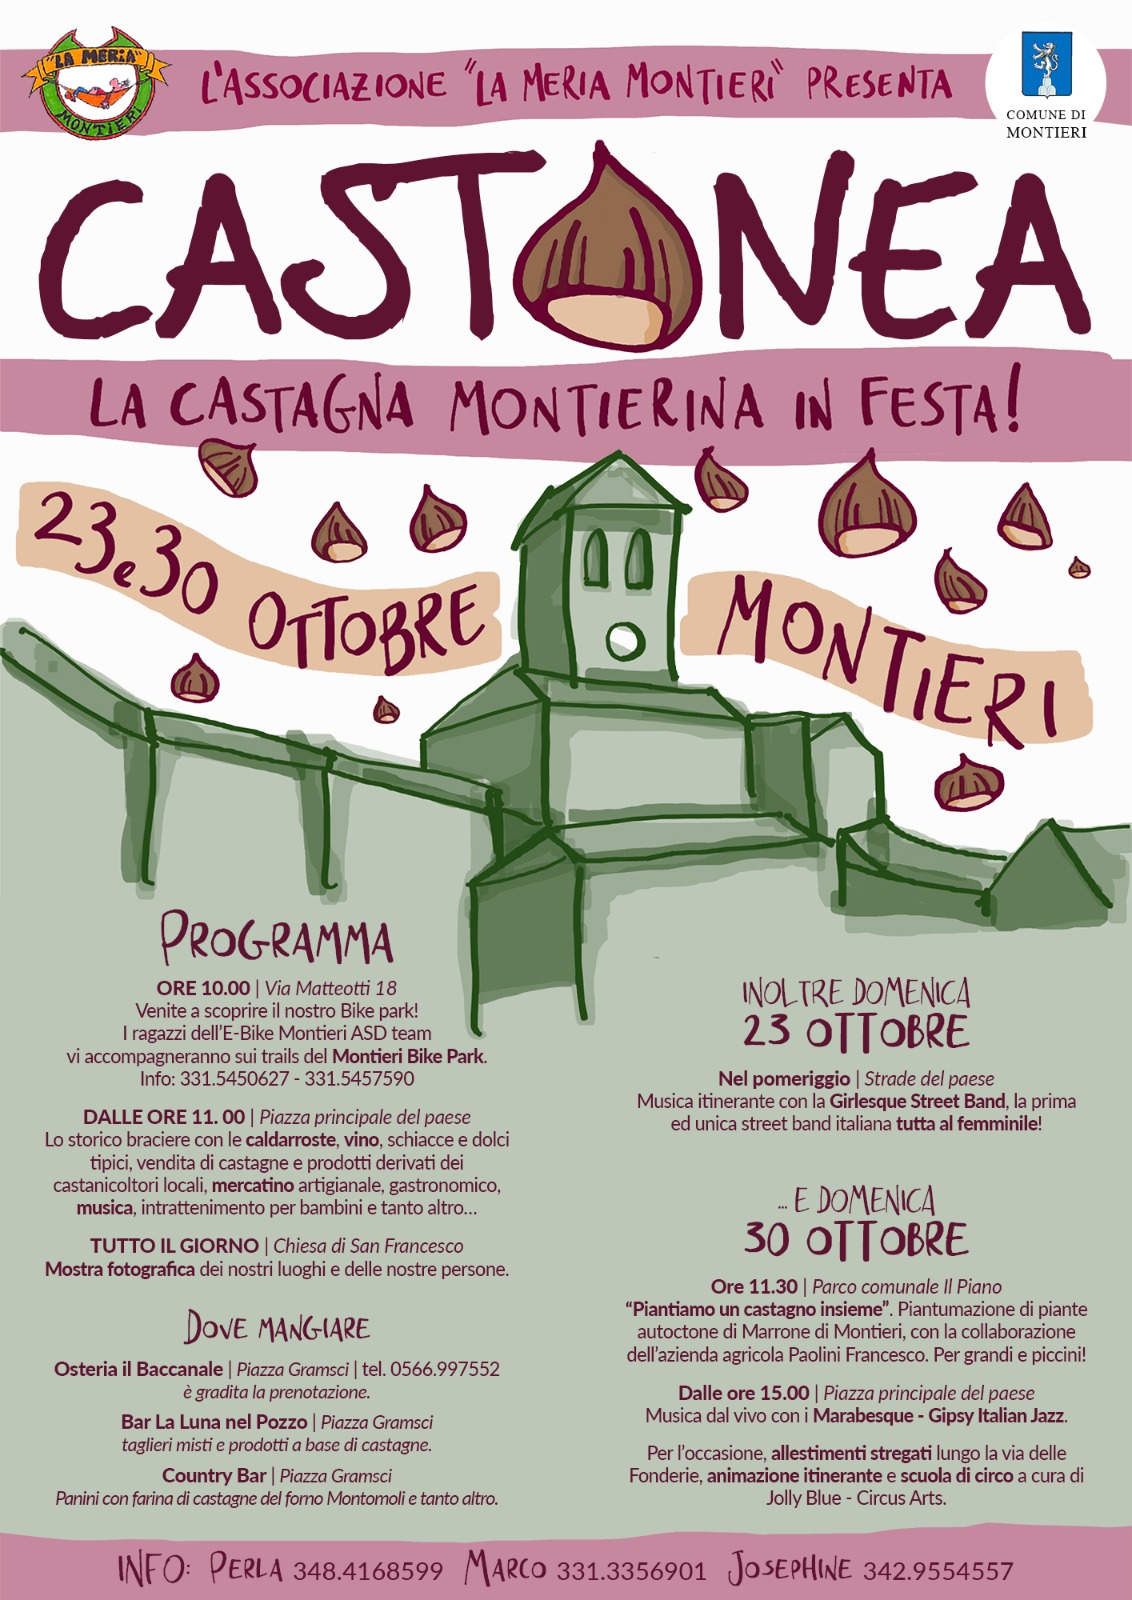 Castanea